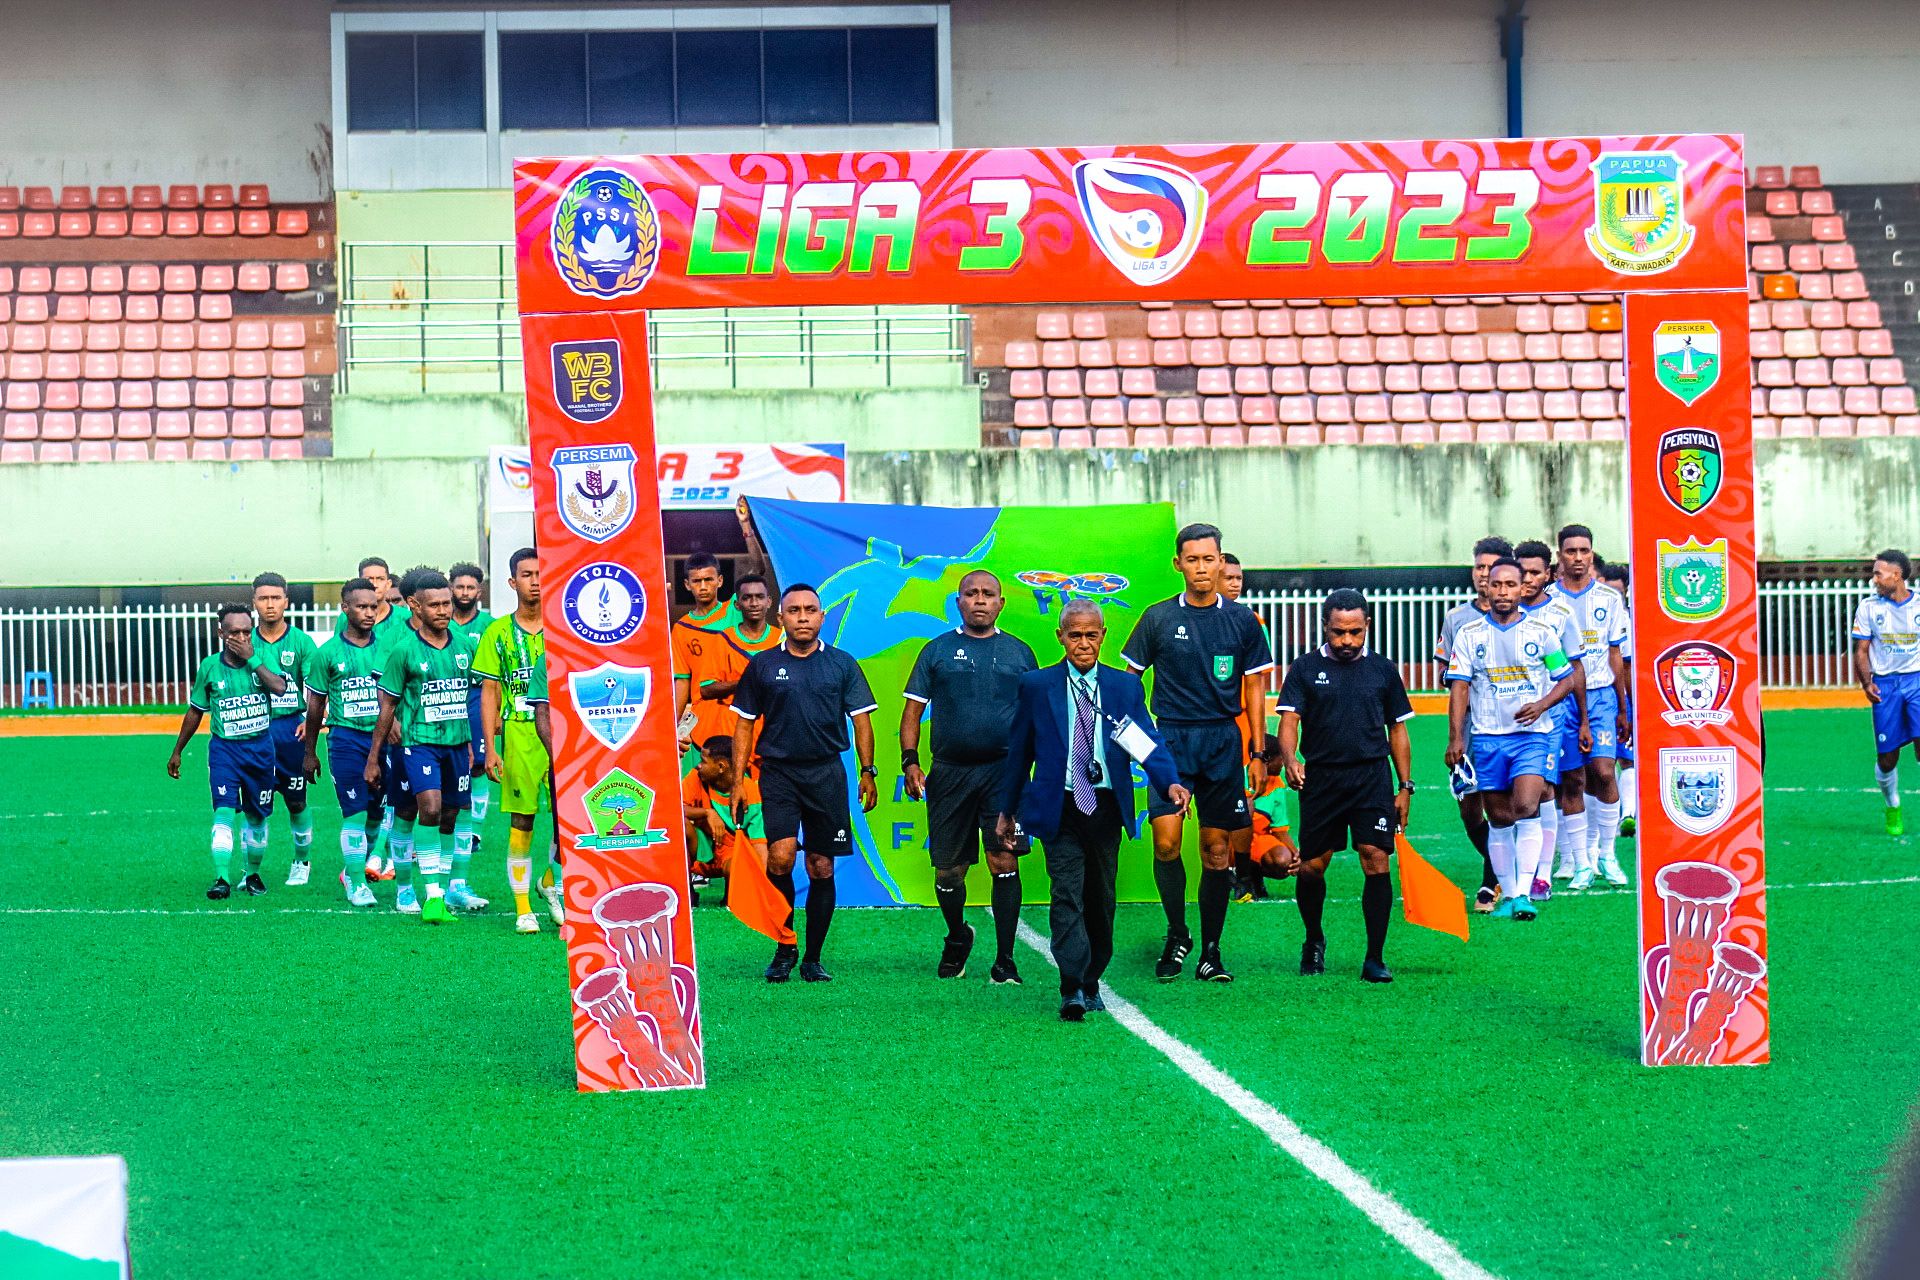 Laga pembuka Liga 3 zona Papua antara Persido Dogiyai vs Toli FC yang dimenangkan Persido Dogiyai 1-0 atas Toli FC